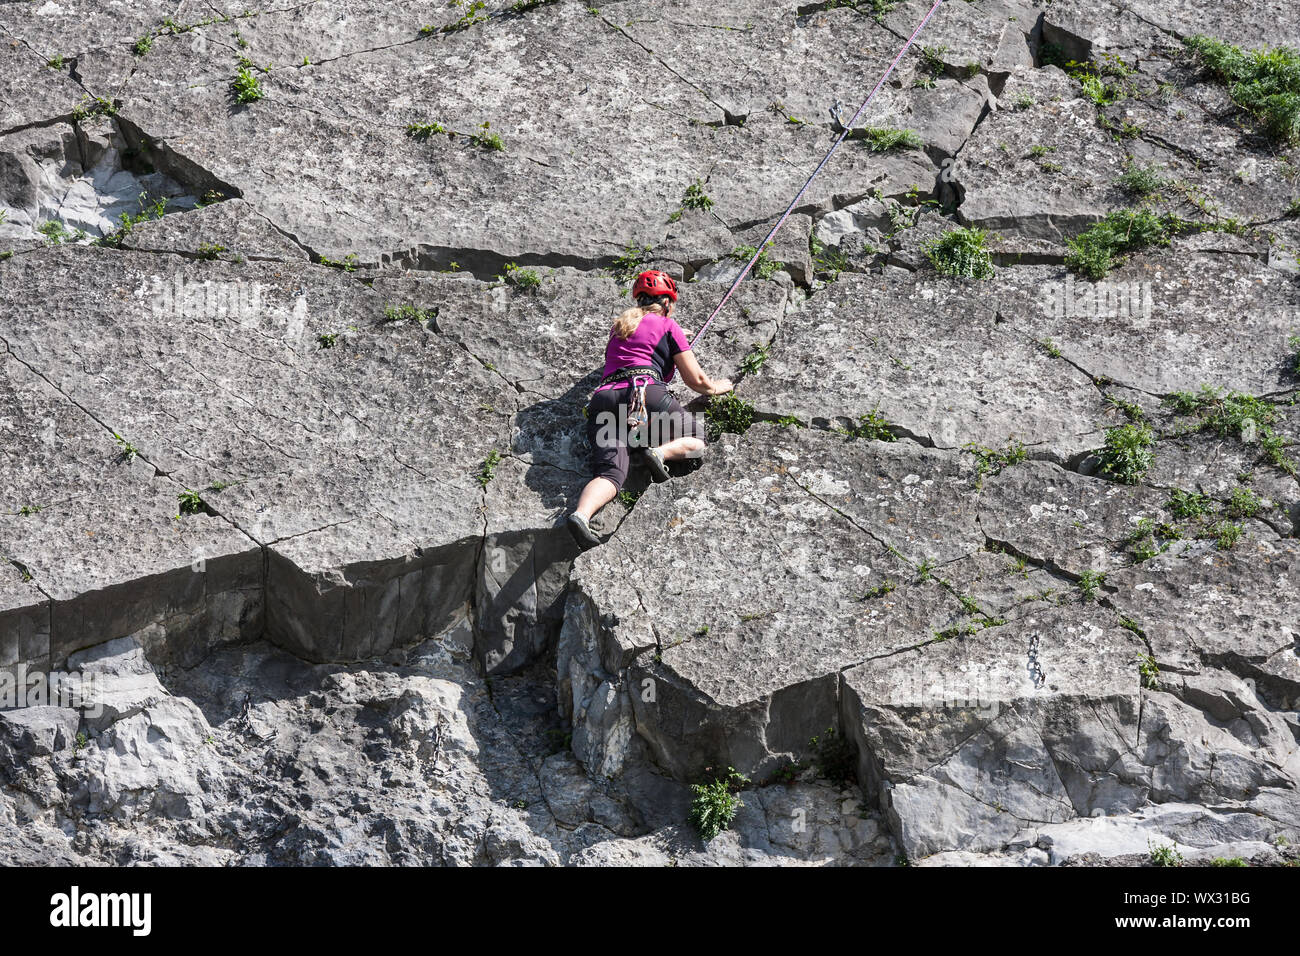 Woman climbing a vertical rock along river Meuse in Belgium Stock Photo